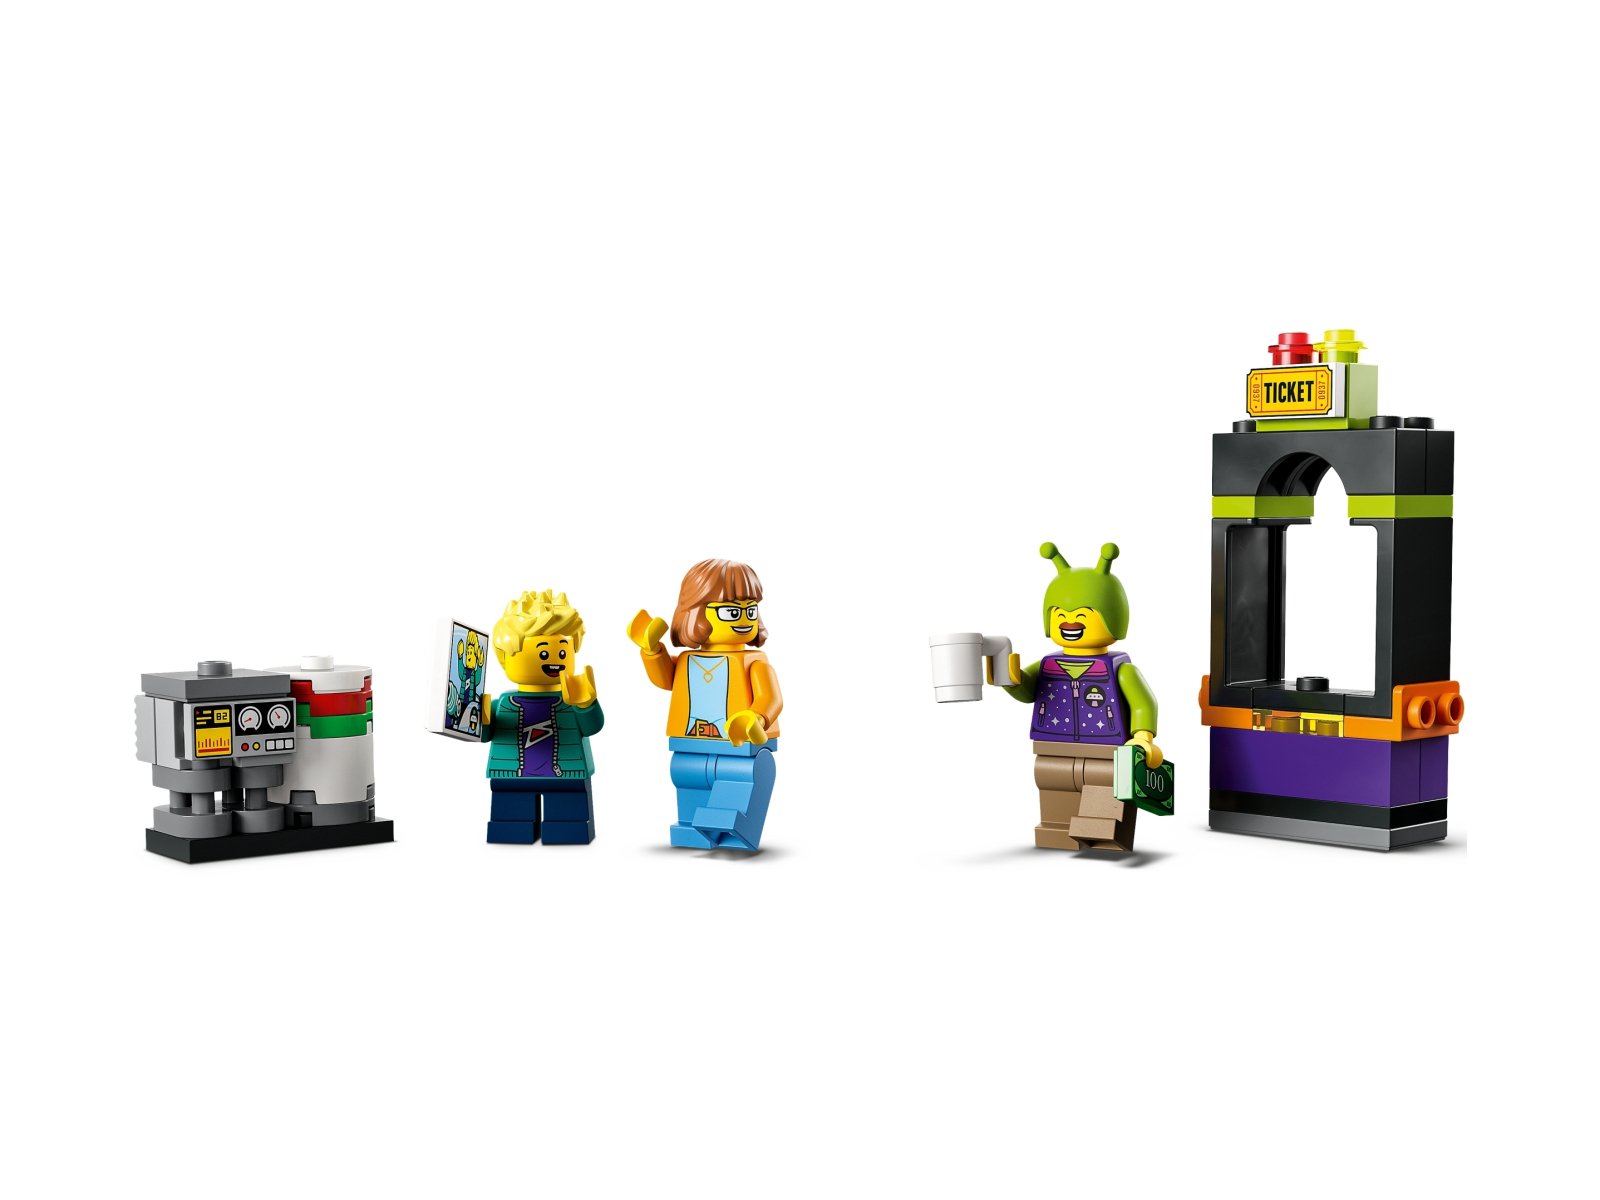 LEGO City Ciężarówka z kosmiczną karuzelą 60313